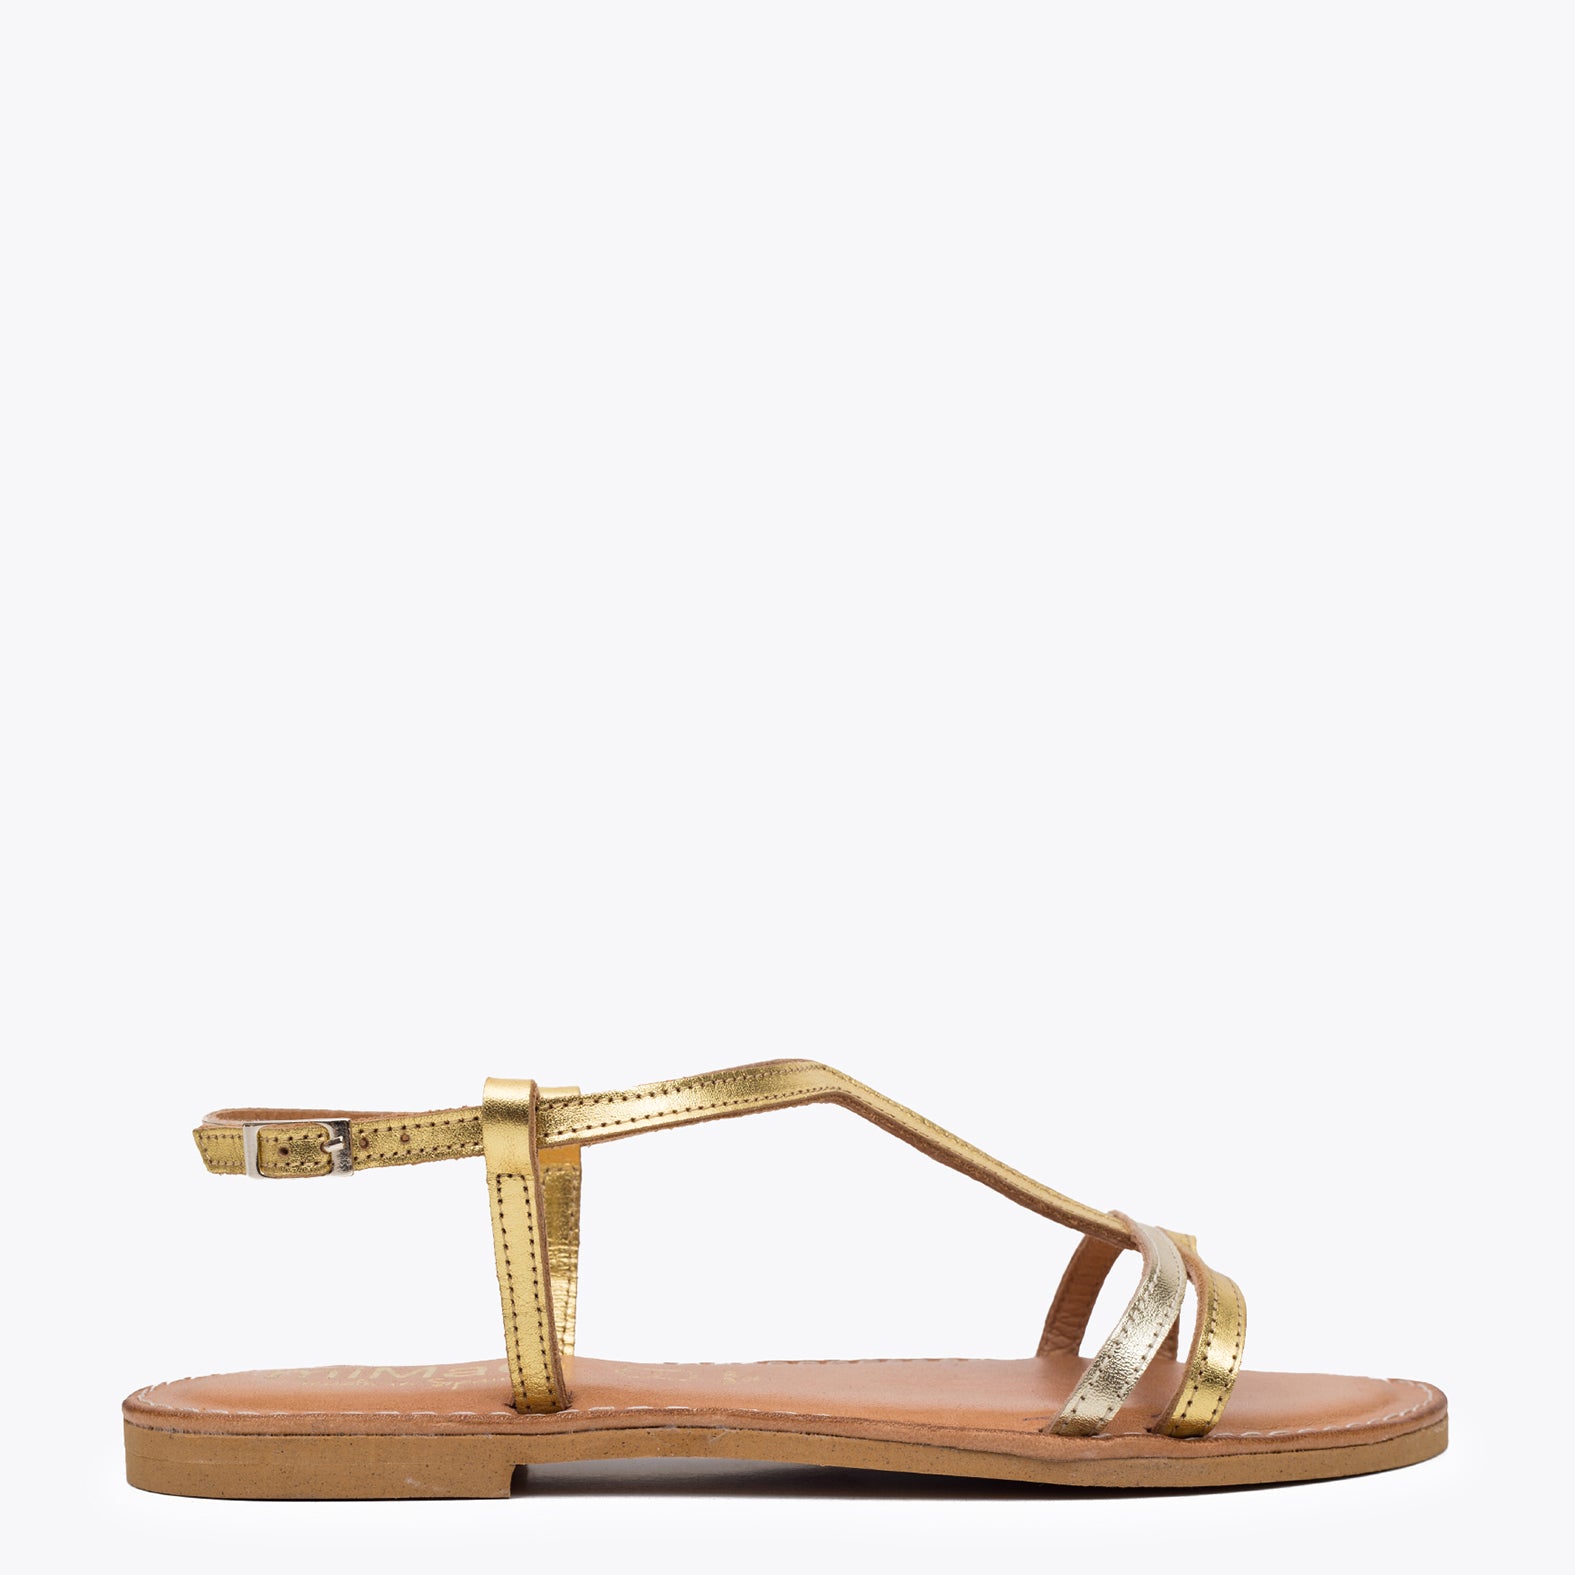 Sandalia plana metalizada DORADA |Comprar sandalias online – miMaO